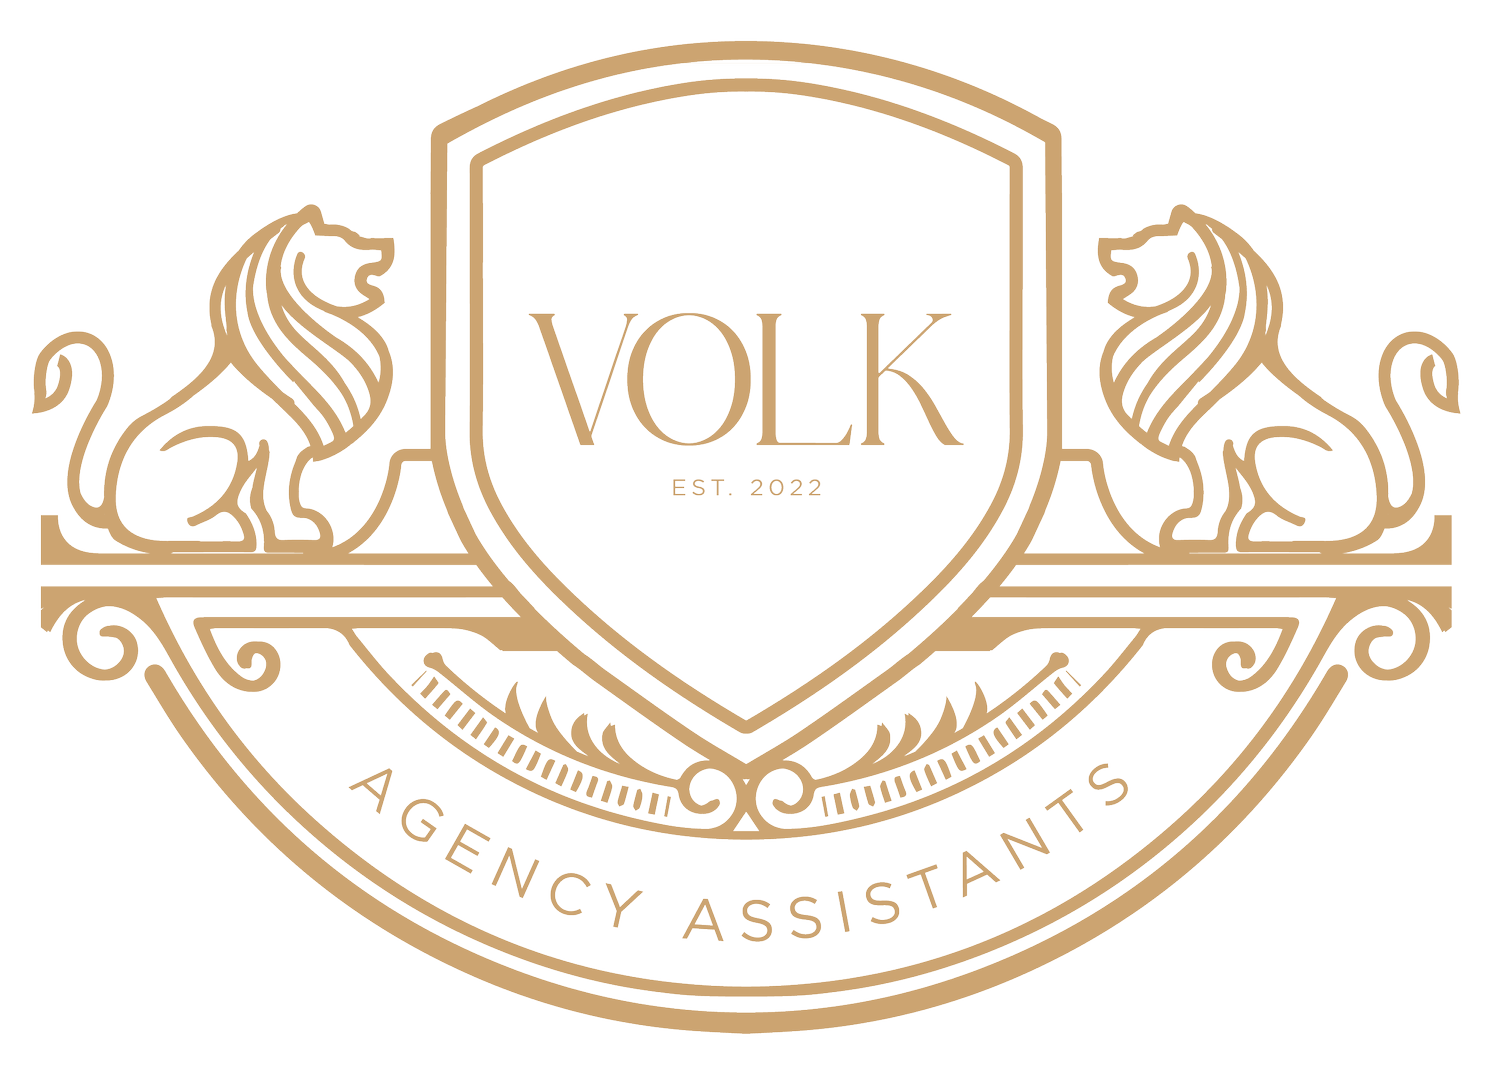 VOLK Agency Assistants